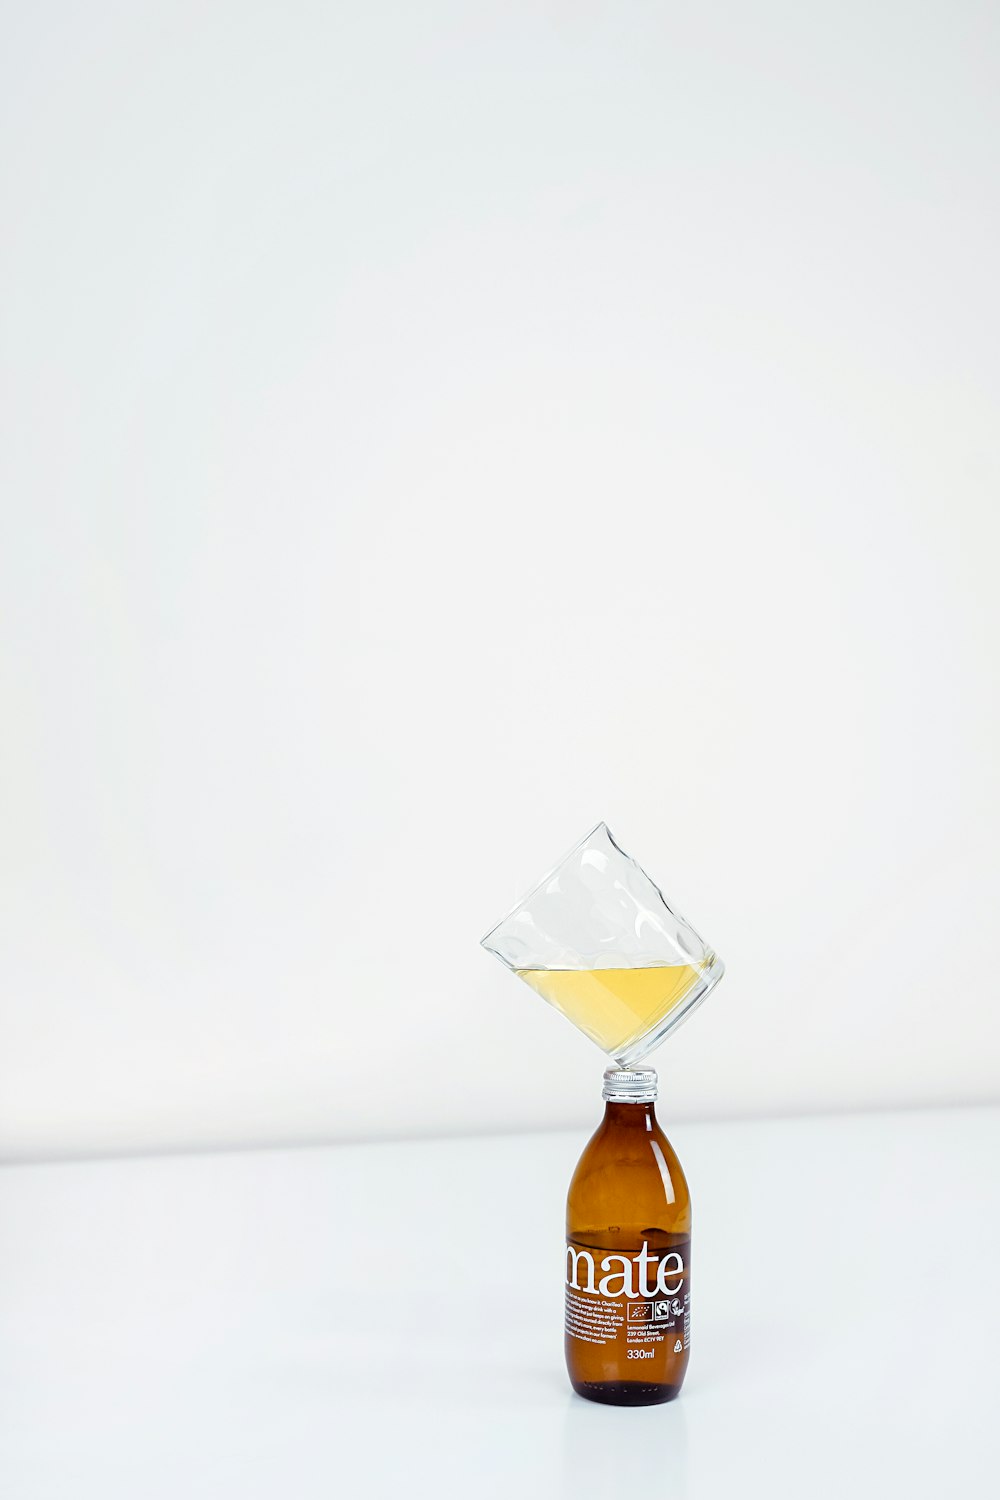 1/4 di bicchiere trasparente sulla parte superiore della bottiglia ambrata